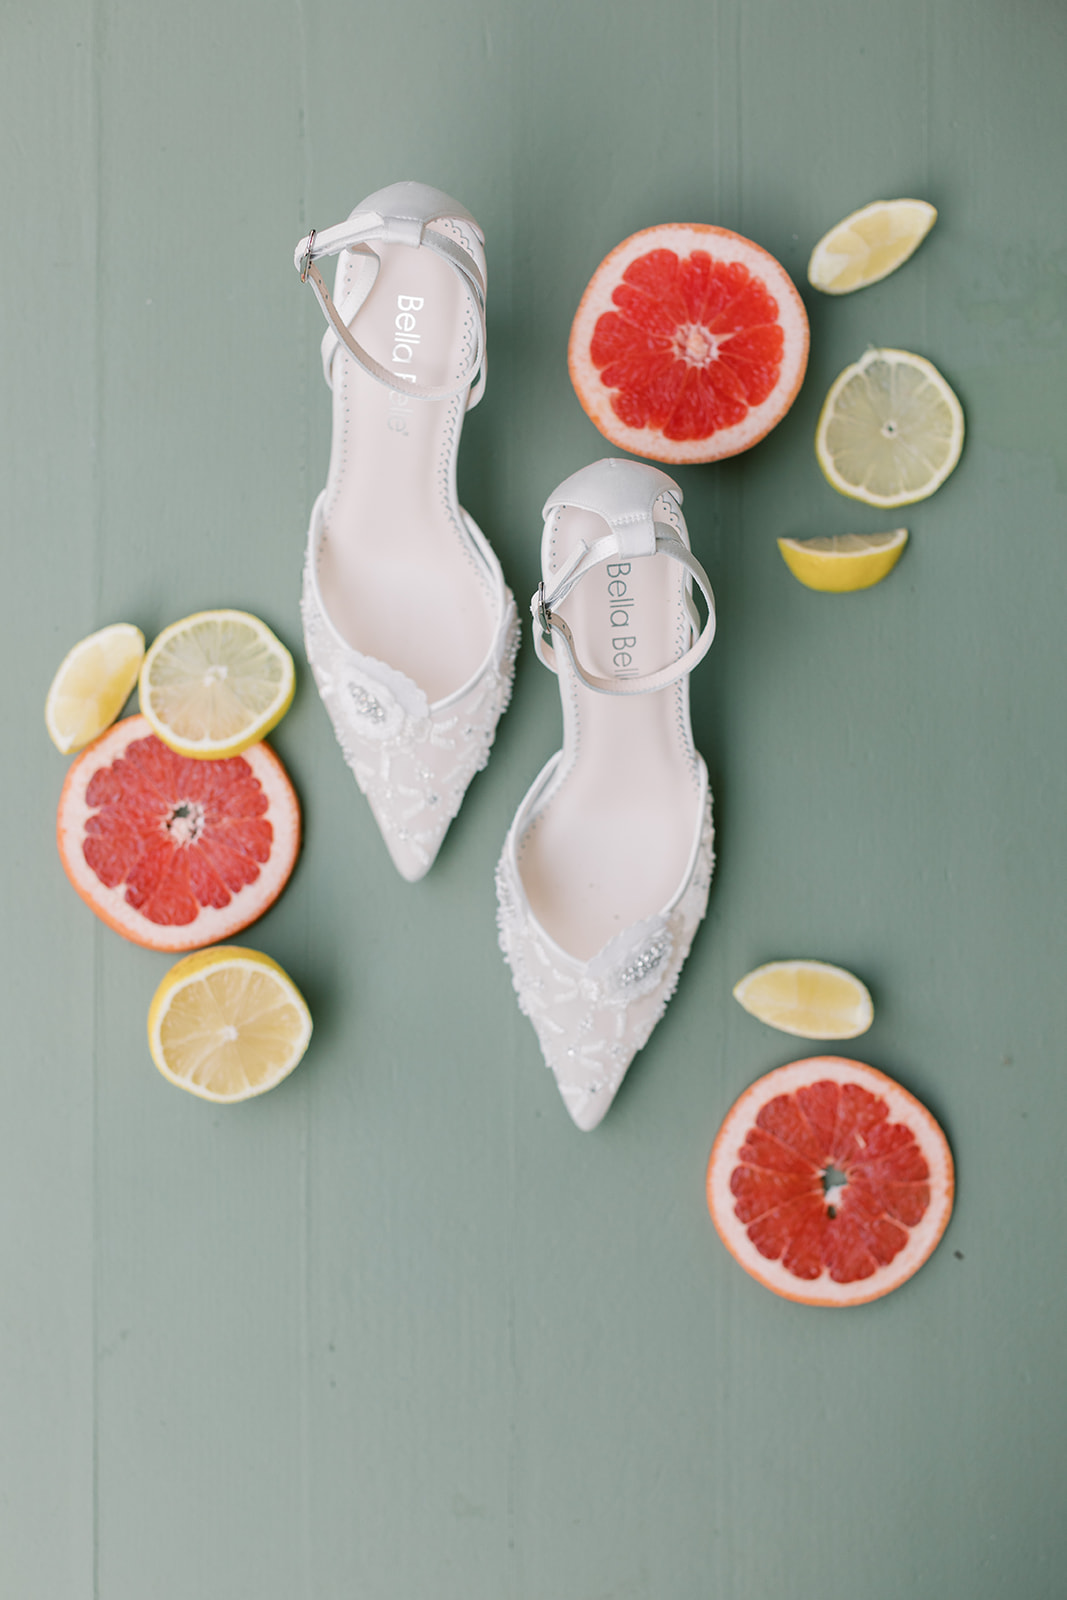 bella belle shoes with citrus accents